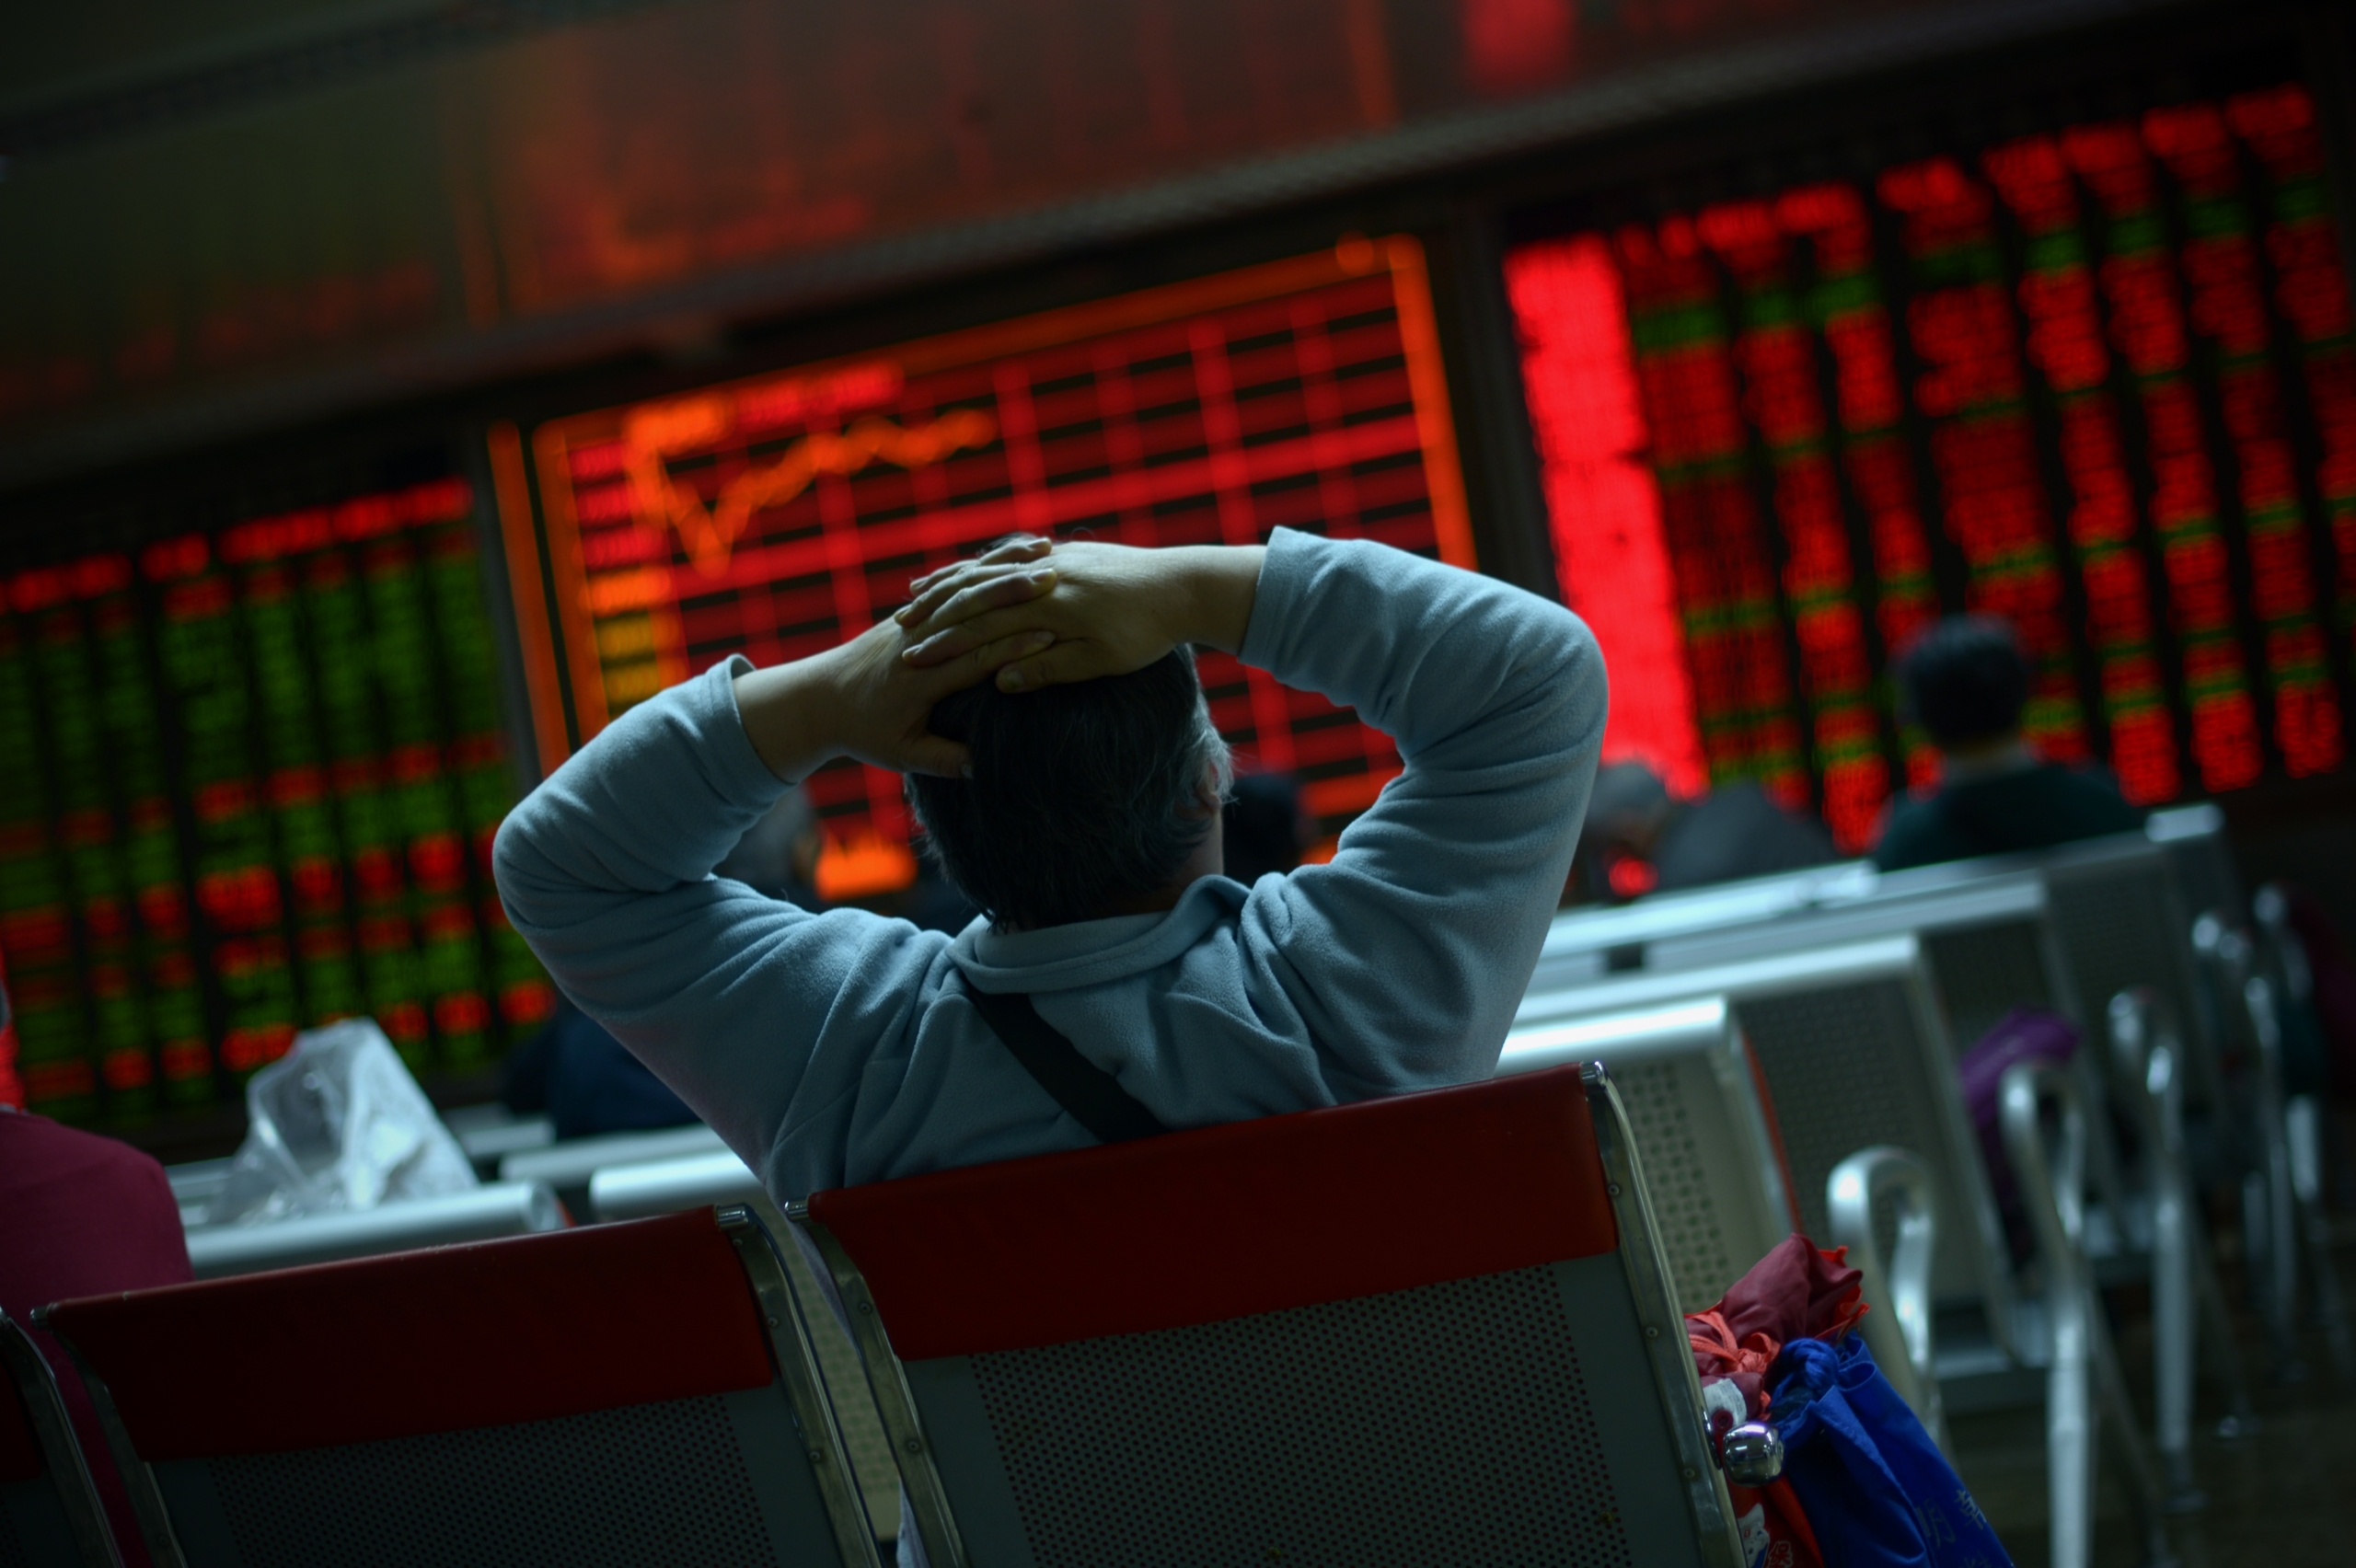 Một nhà đầu tư nhìn vào màn hình hiển thị diễn biến thị trường chứng khoán tại một công ty chứng khoán ở Bắc Kinh hôm 08/01/2016. (Ảnh: Wang Zhao/AFP qua Getty Images)